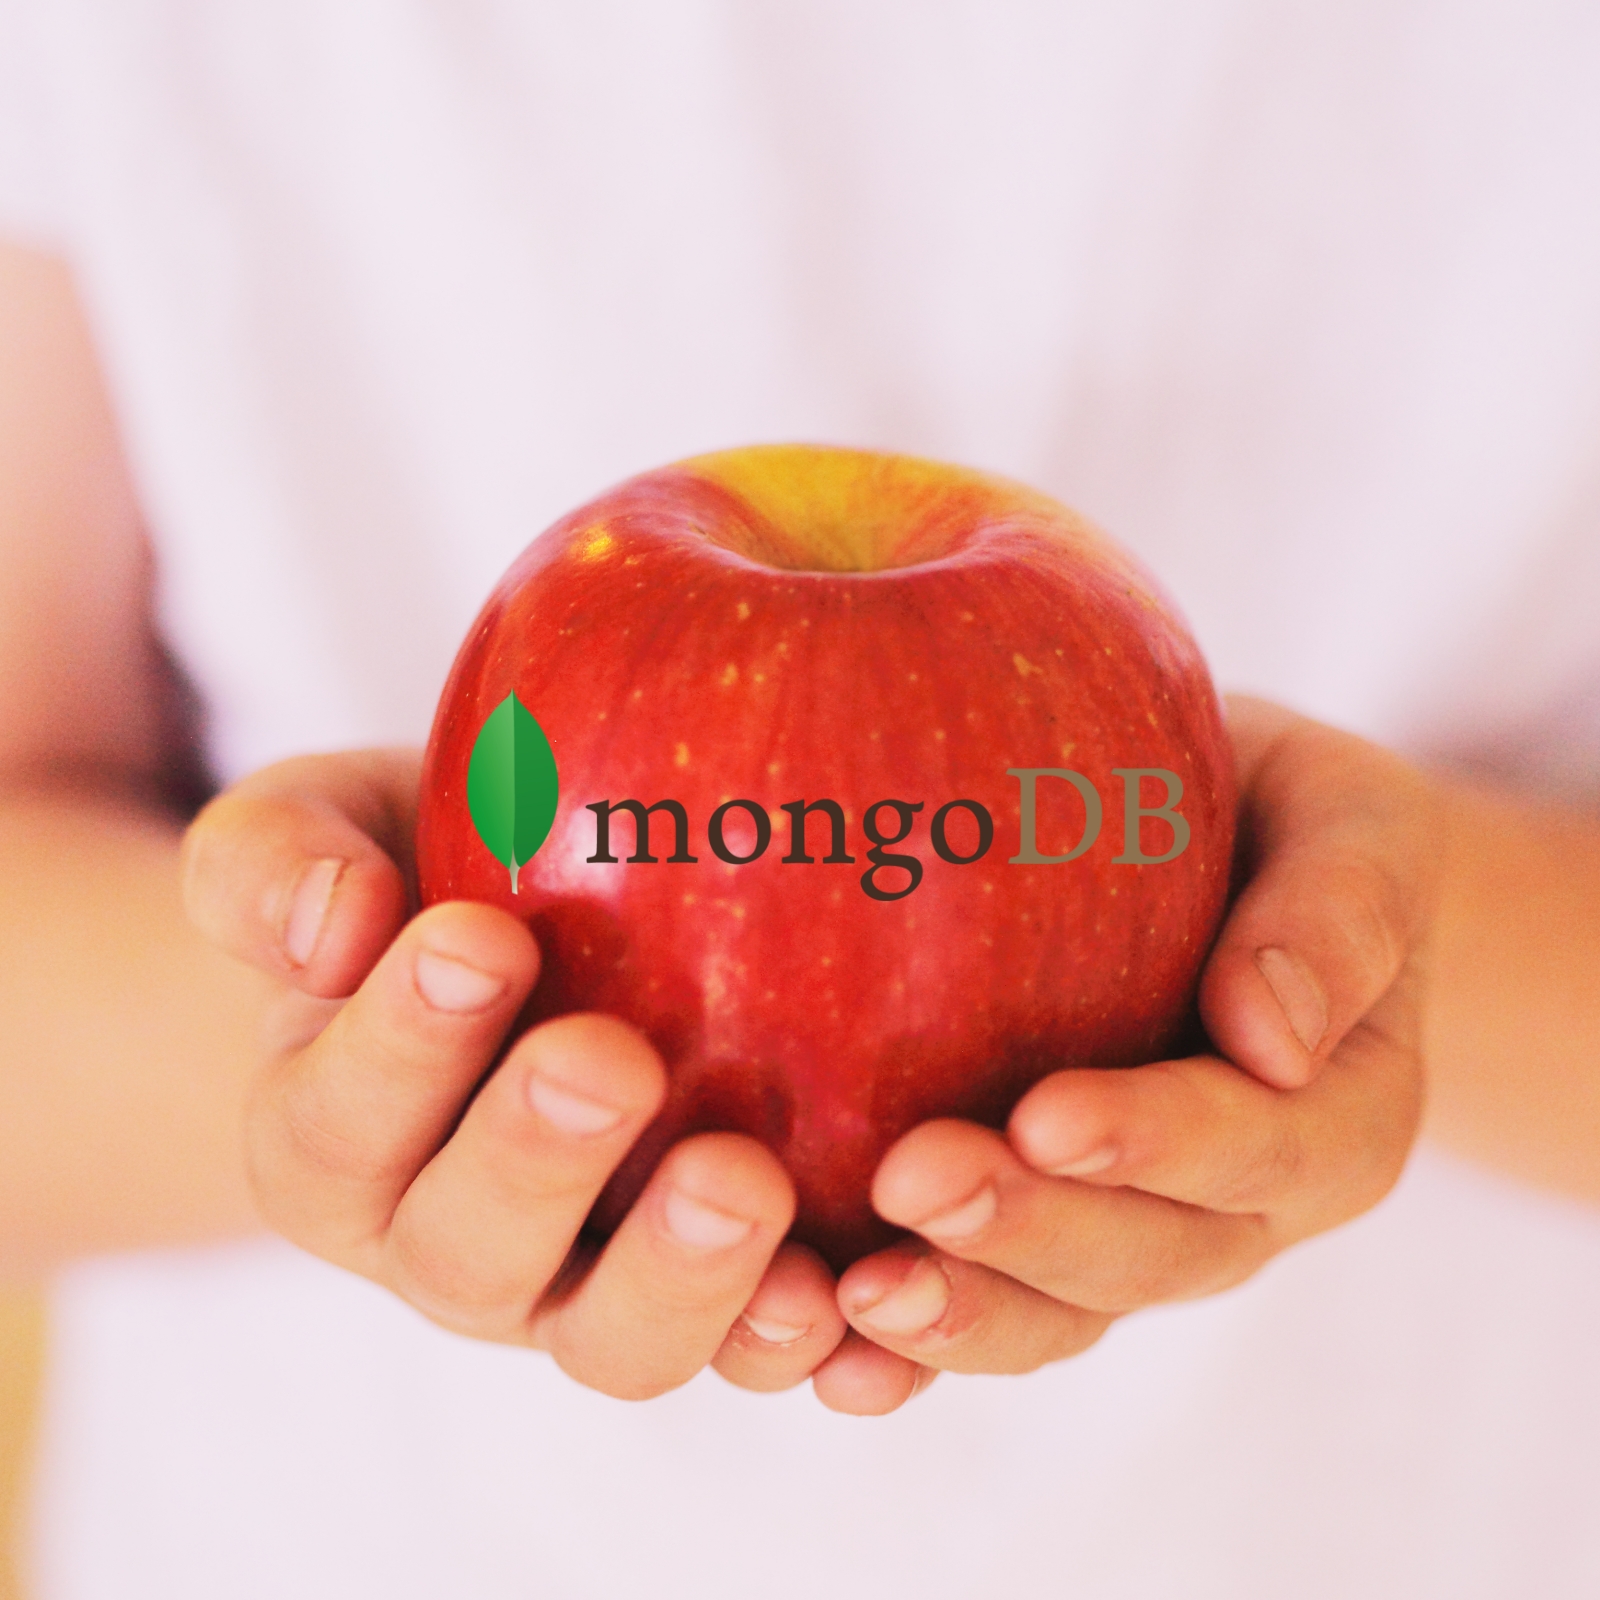 Faut-il tomber amoureux de MongoDB ?